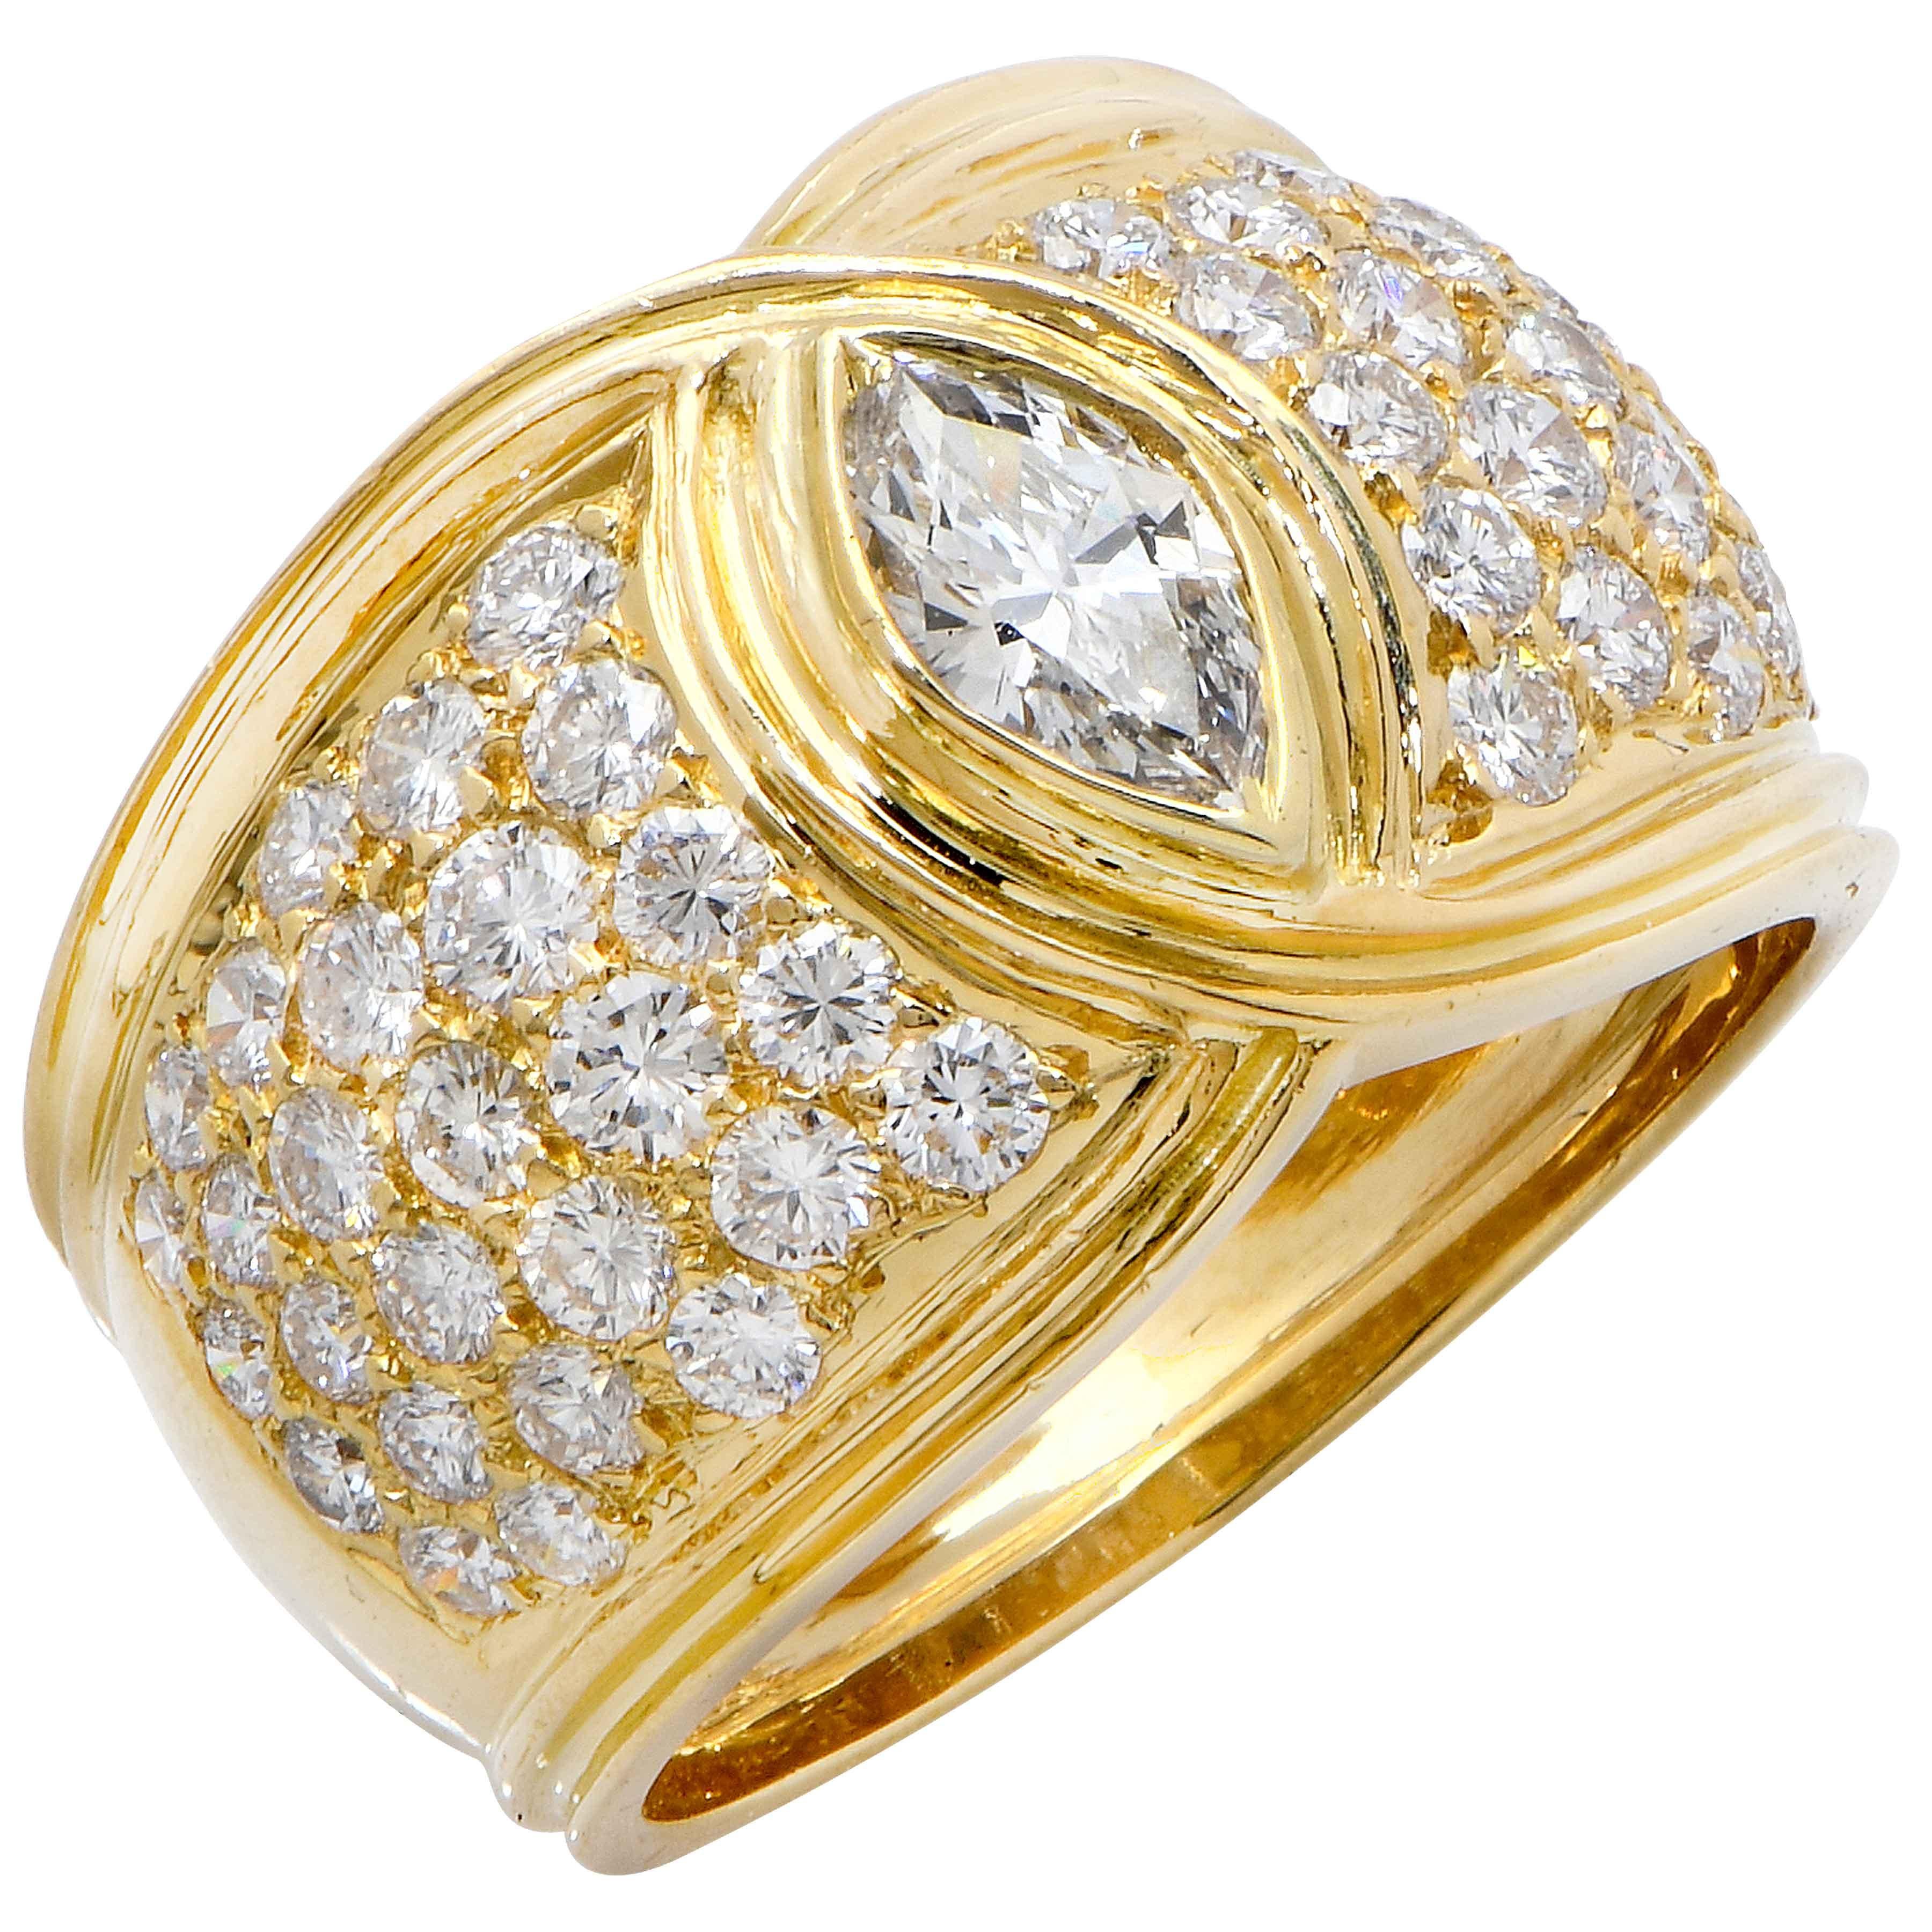 2.5 Carat Diamond Ring in 18 Karat Yellow Gold